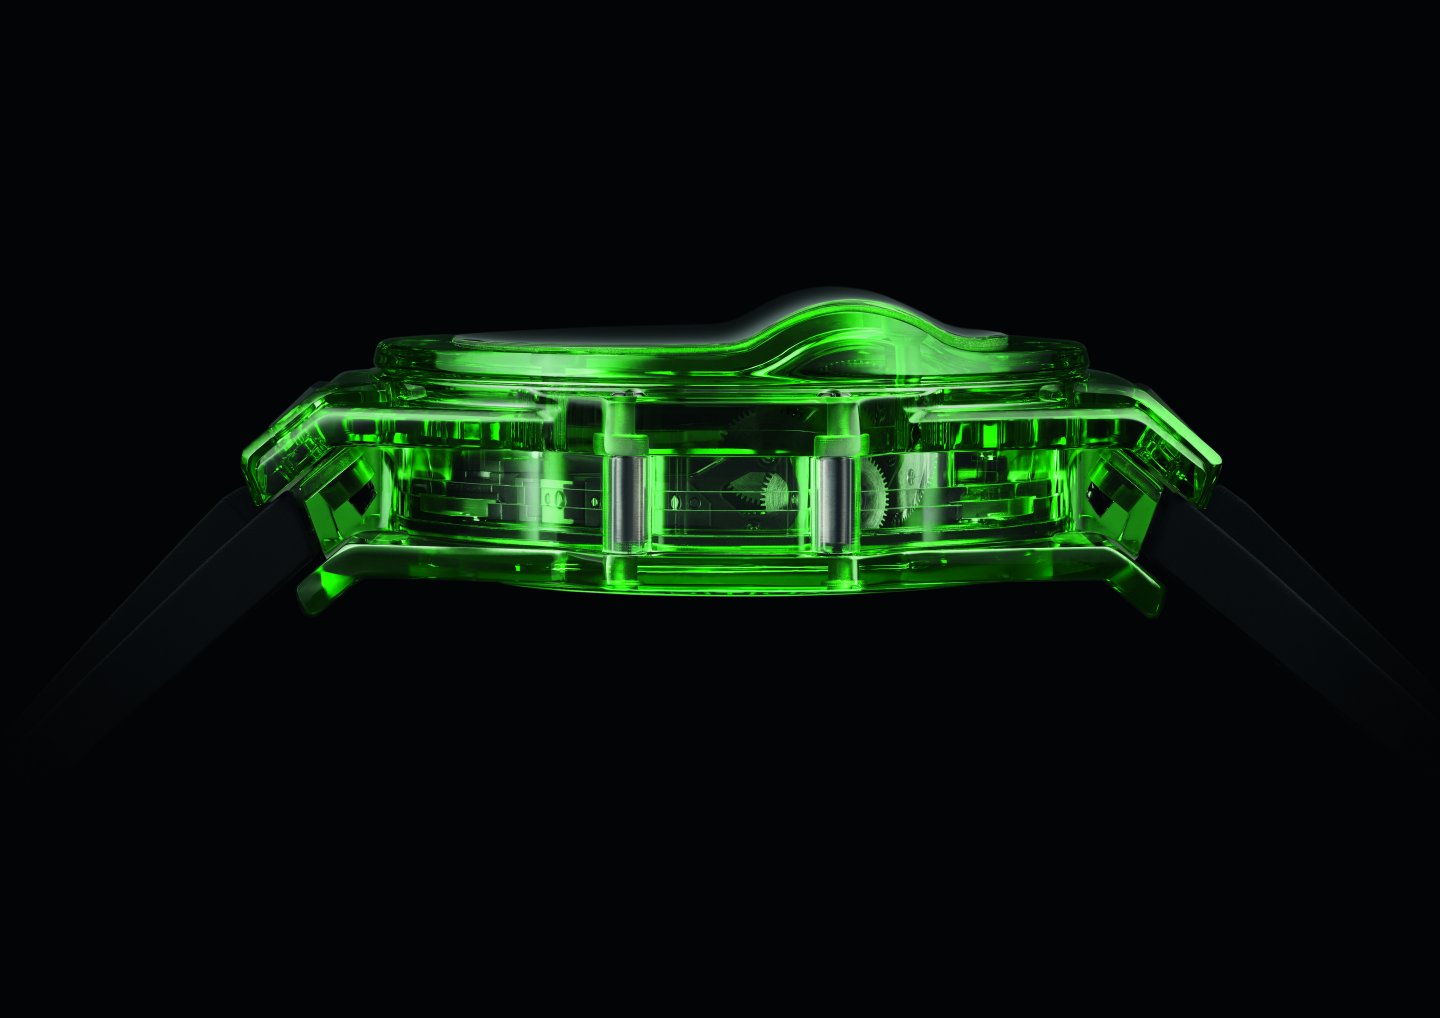 ウブロ サファイアに続くエメラルドグリーンの新たな透明素材  グリーンのSAXEMを採用したカラフルなビッグ・バン MP-11